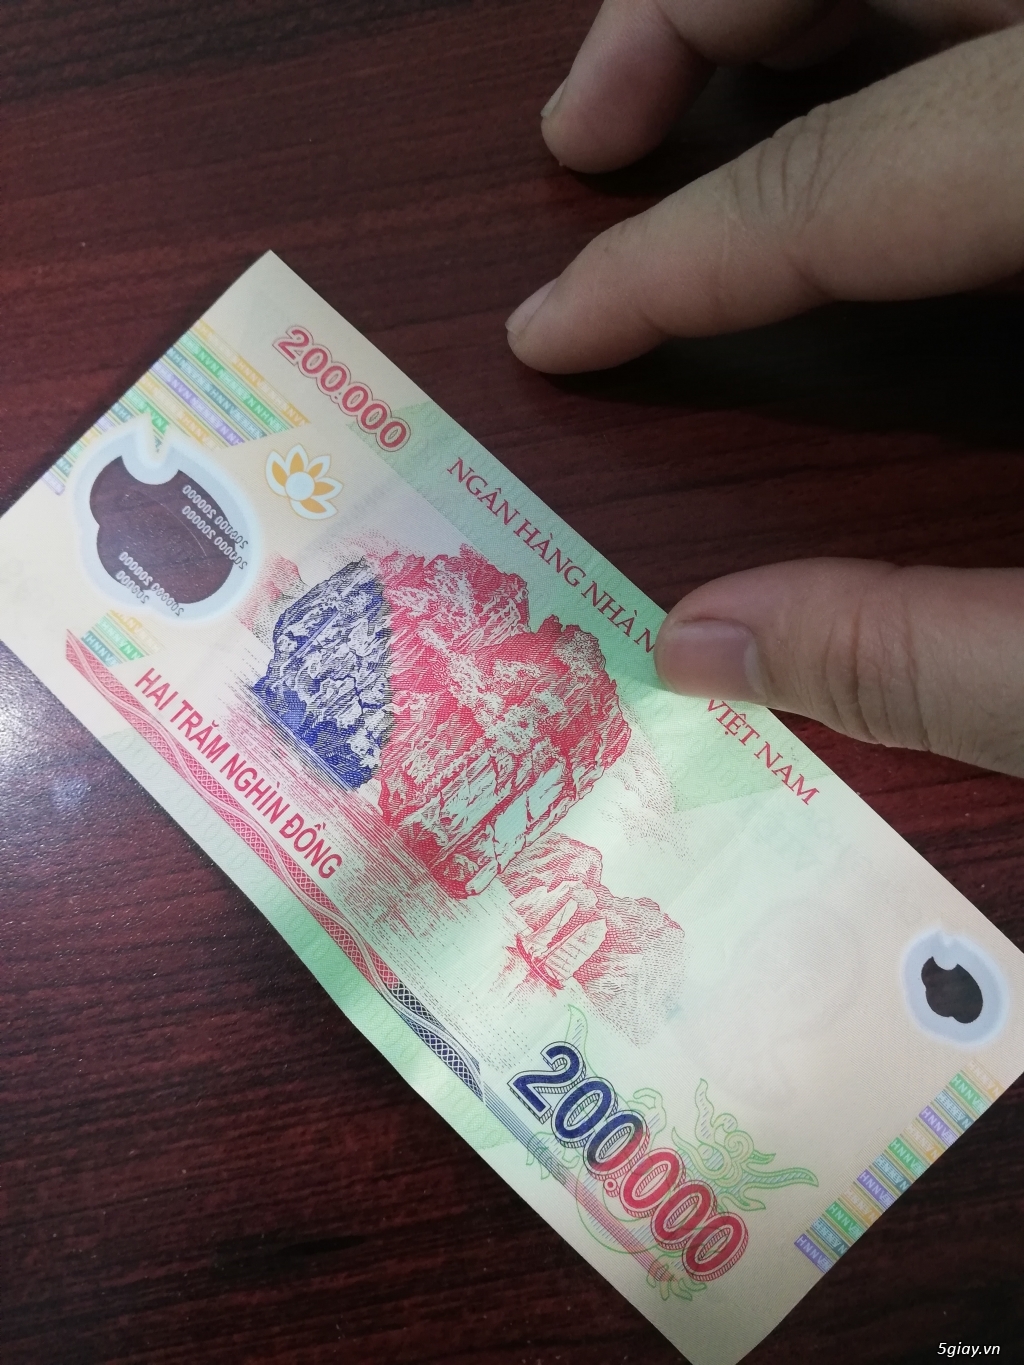 Tờ tiền 200k seri 99999: “Đây có lẽ là tờ tiền 200k seri 99999 đang được săn đón nhiều nhất hiện nay. Hãy đến với hình ảnh này để chiêm ngưỡng vẻ đẹp độc đáo của tờ tiền này và tìm hiểu về ý nghĩa đặc biệt của seri 99999 trên đồng tiền Việt Nam.”